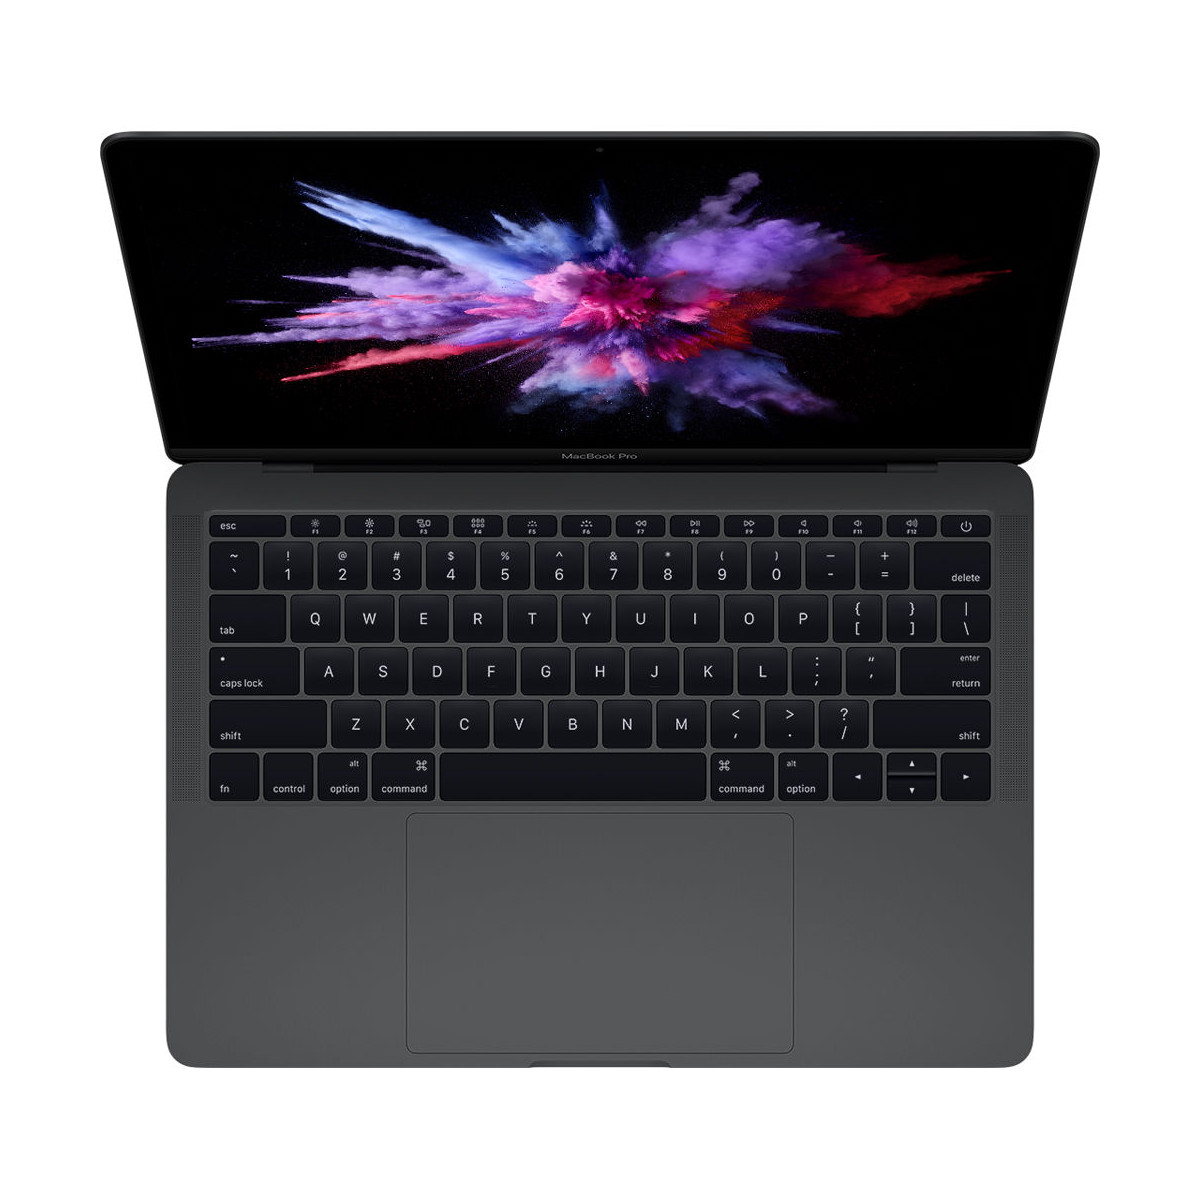 Apple MacBook Pro 13 2017 MPXT2 Core i5 7th gen 8GB RAM 256GB SSD 13.3 inch Retina